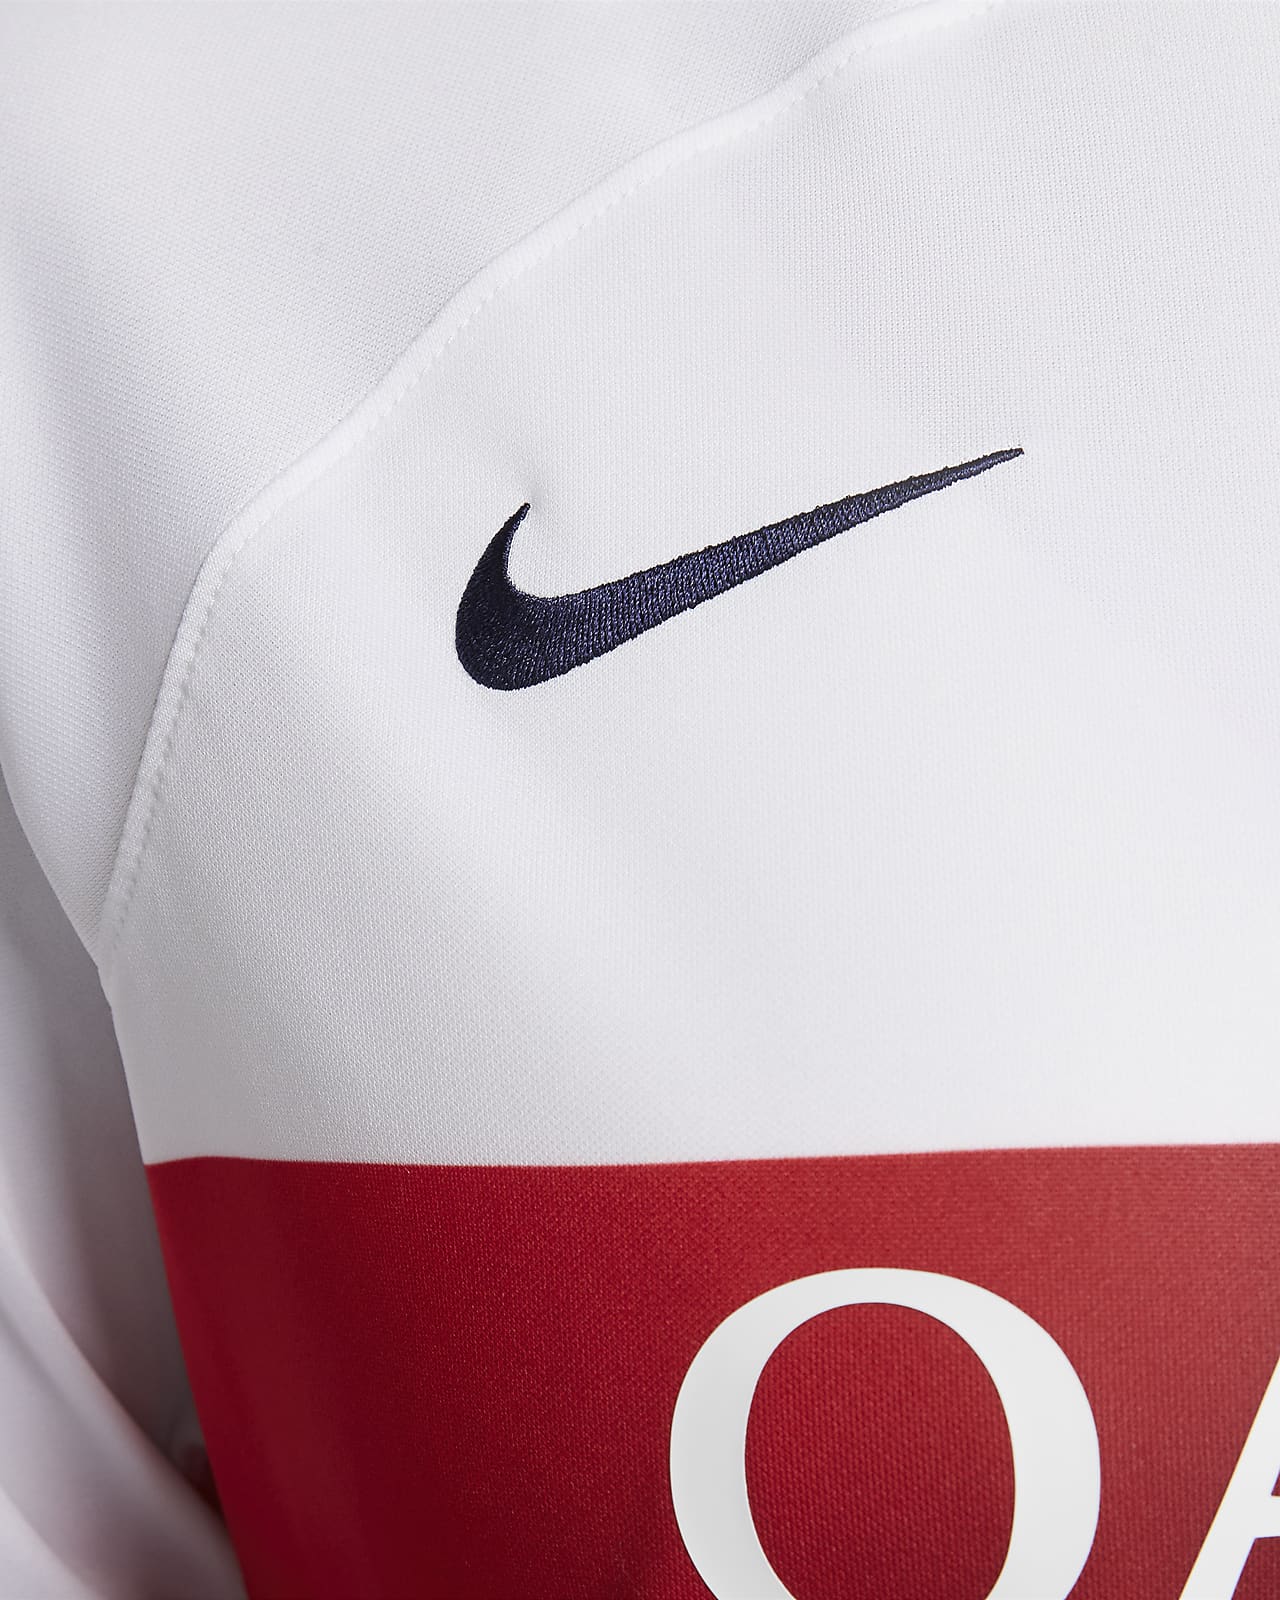 Nike Paris St. Germain Shirt Home 2020/2021 - White